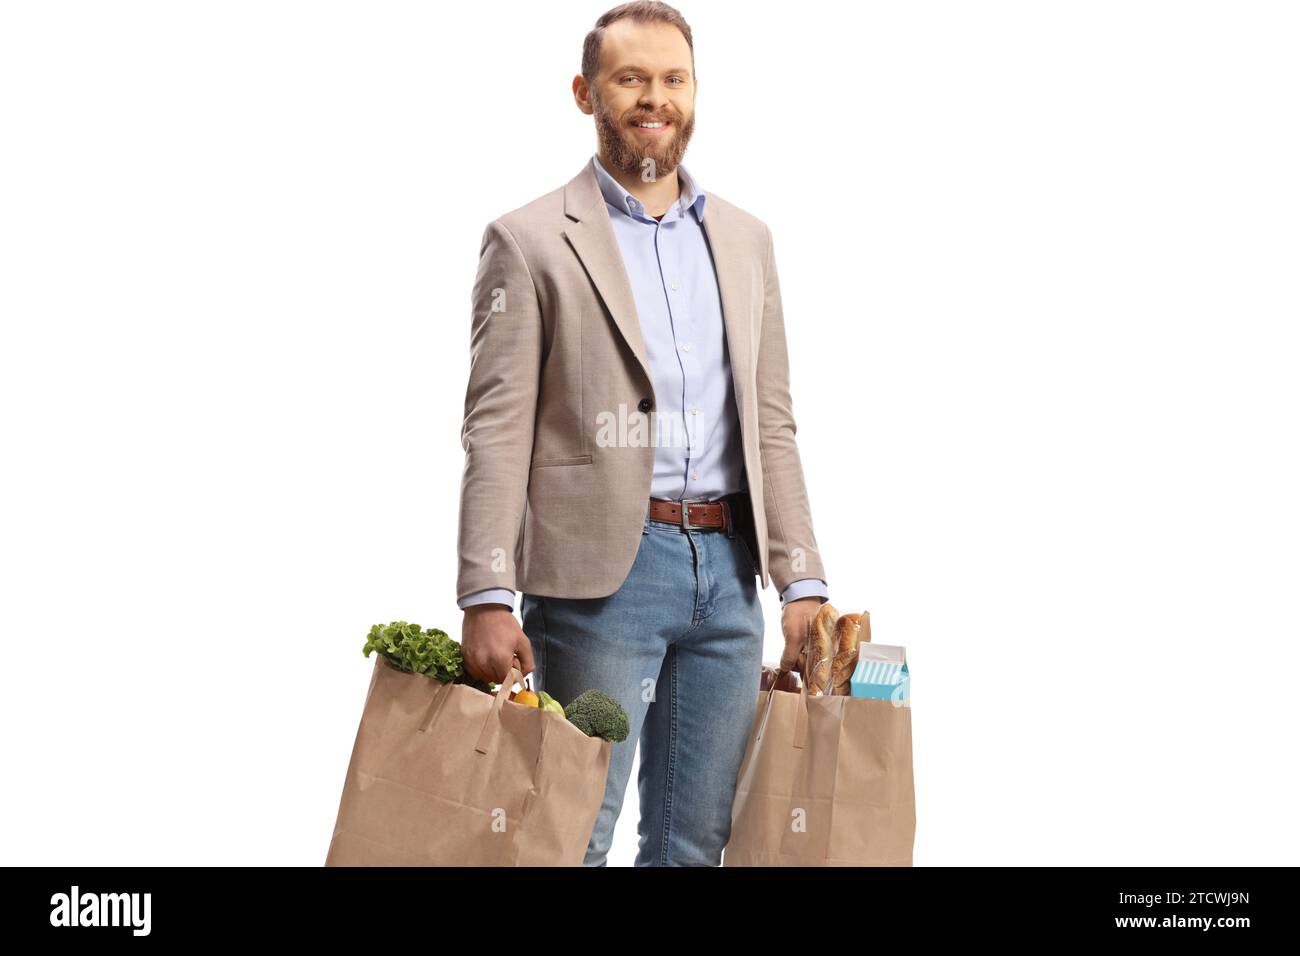 Lächelnder junger Mann, der Einkaufstaschen isoliert auf weißem Hintergrund trägt Stockfoto